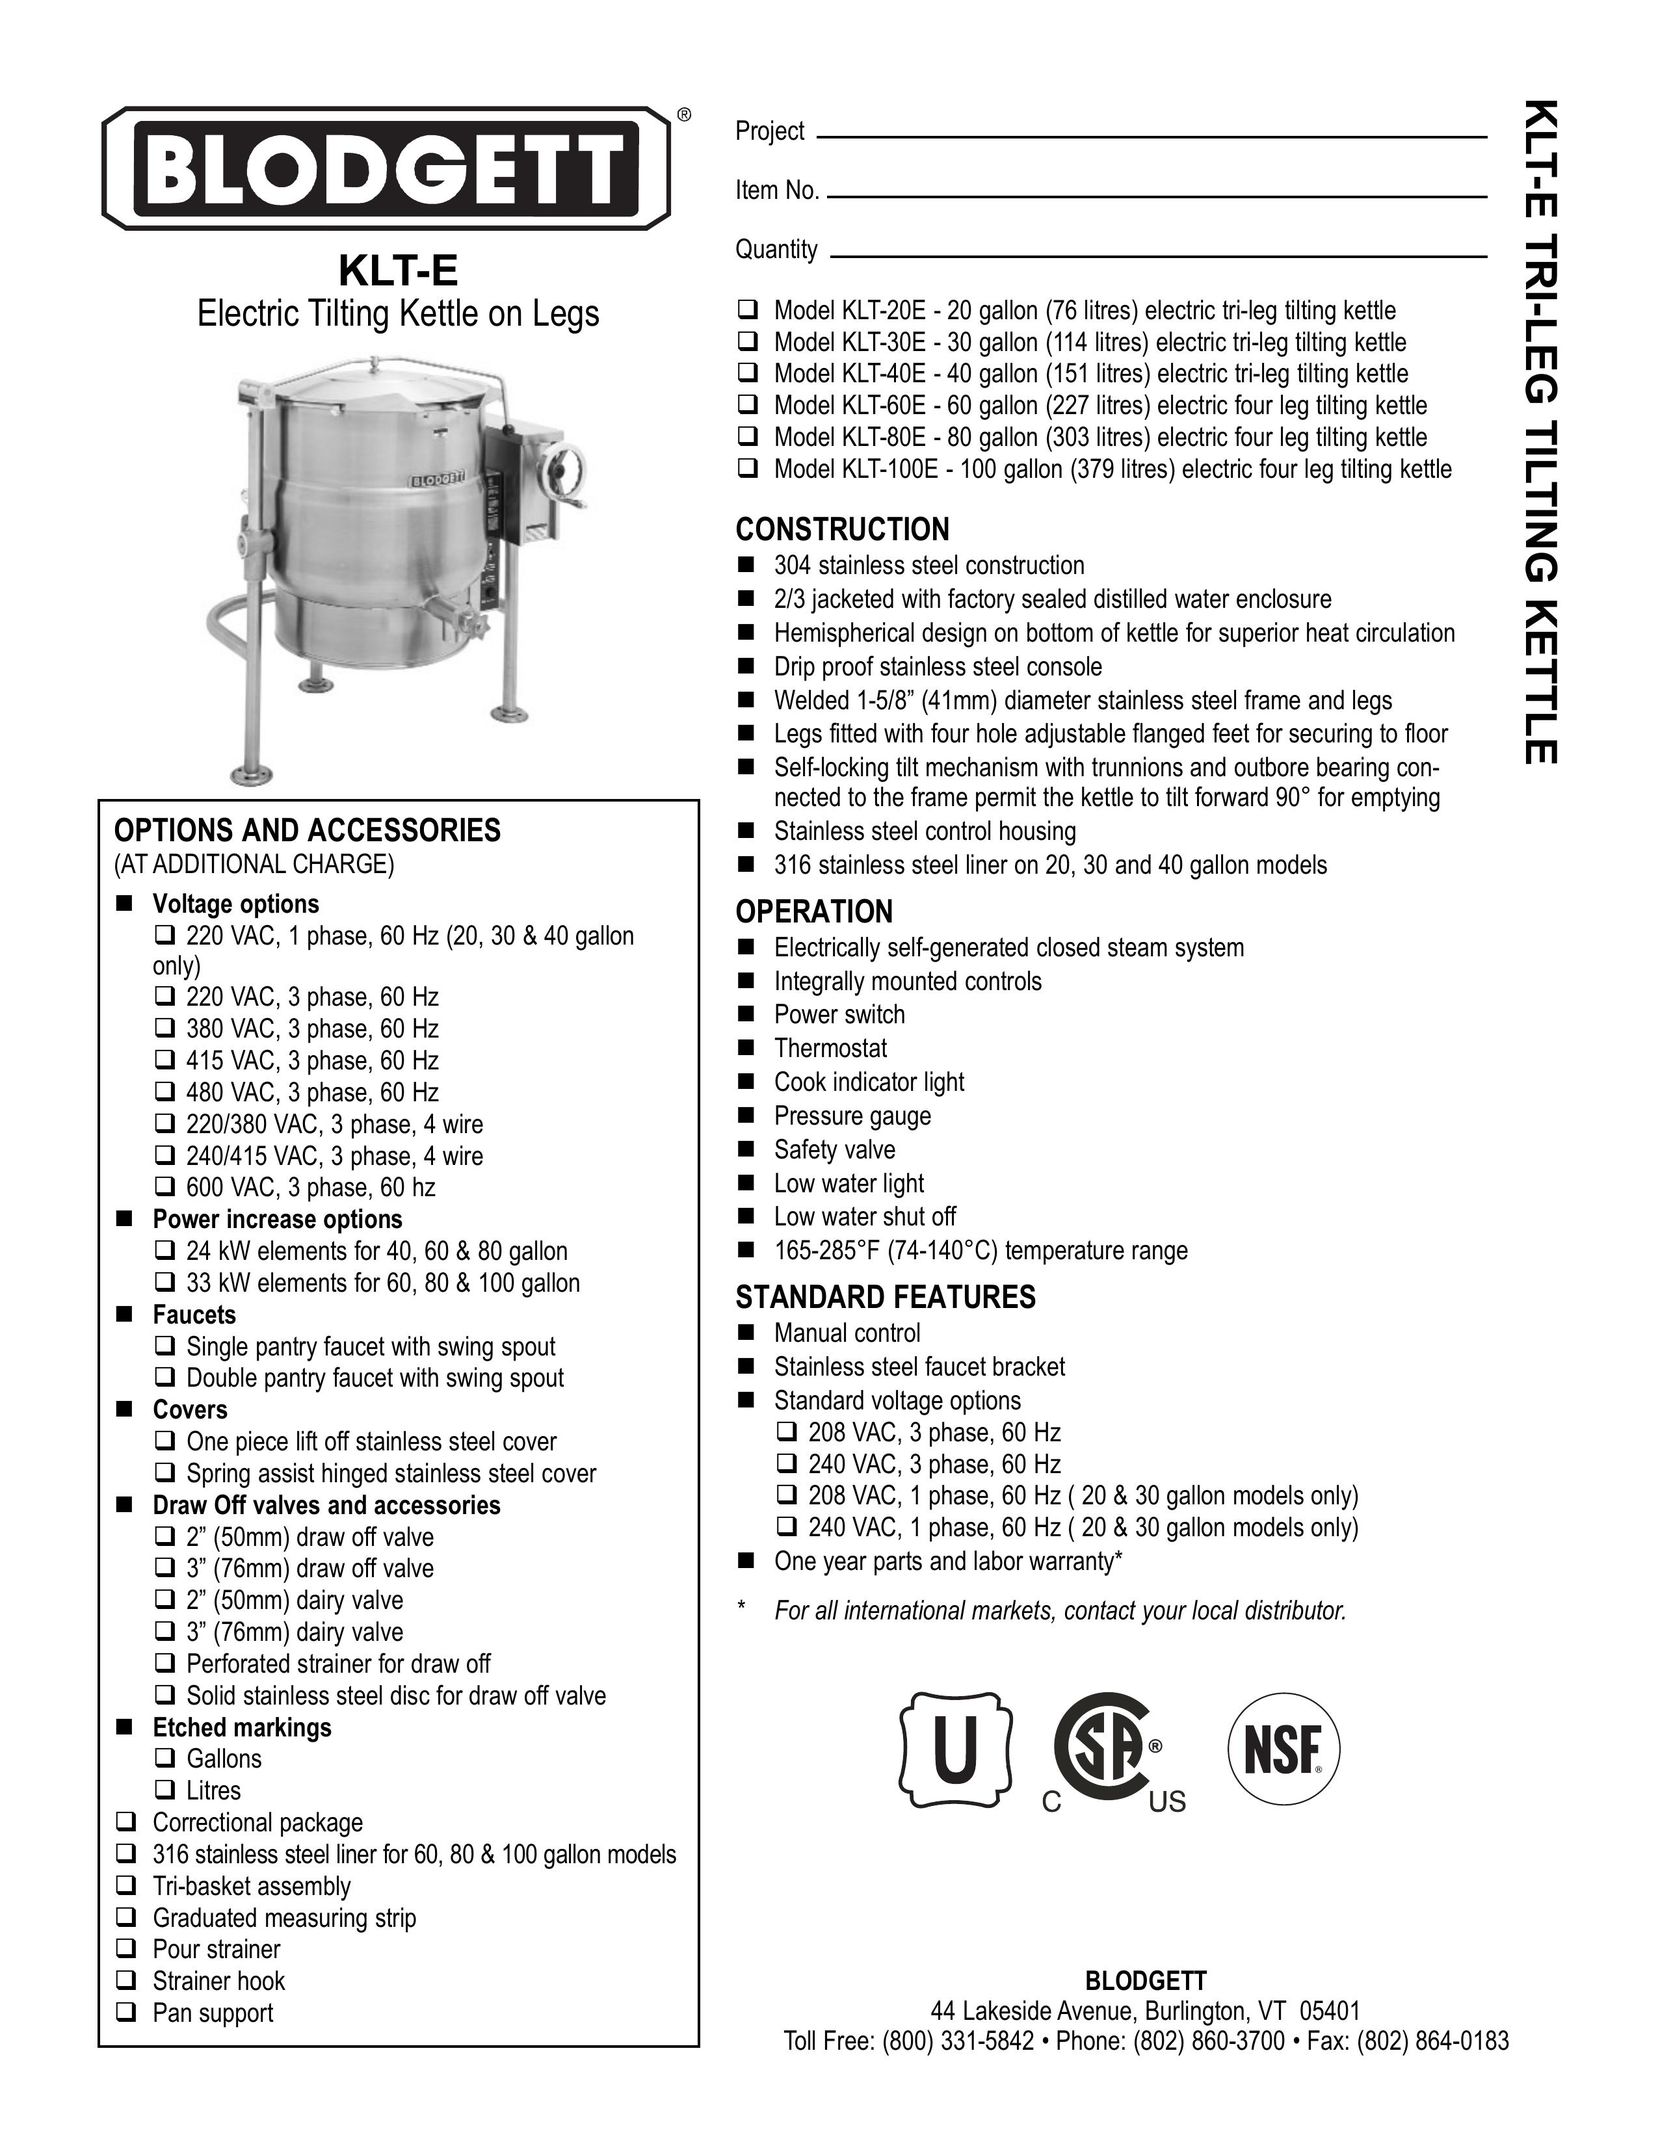 Blodgett KLT-E Hot Beverage Maker User Manual